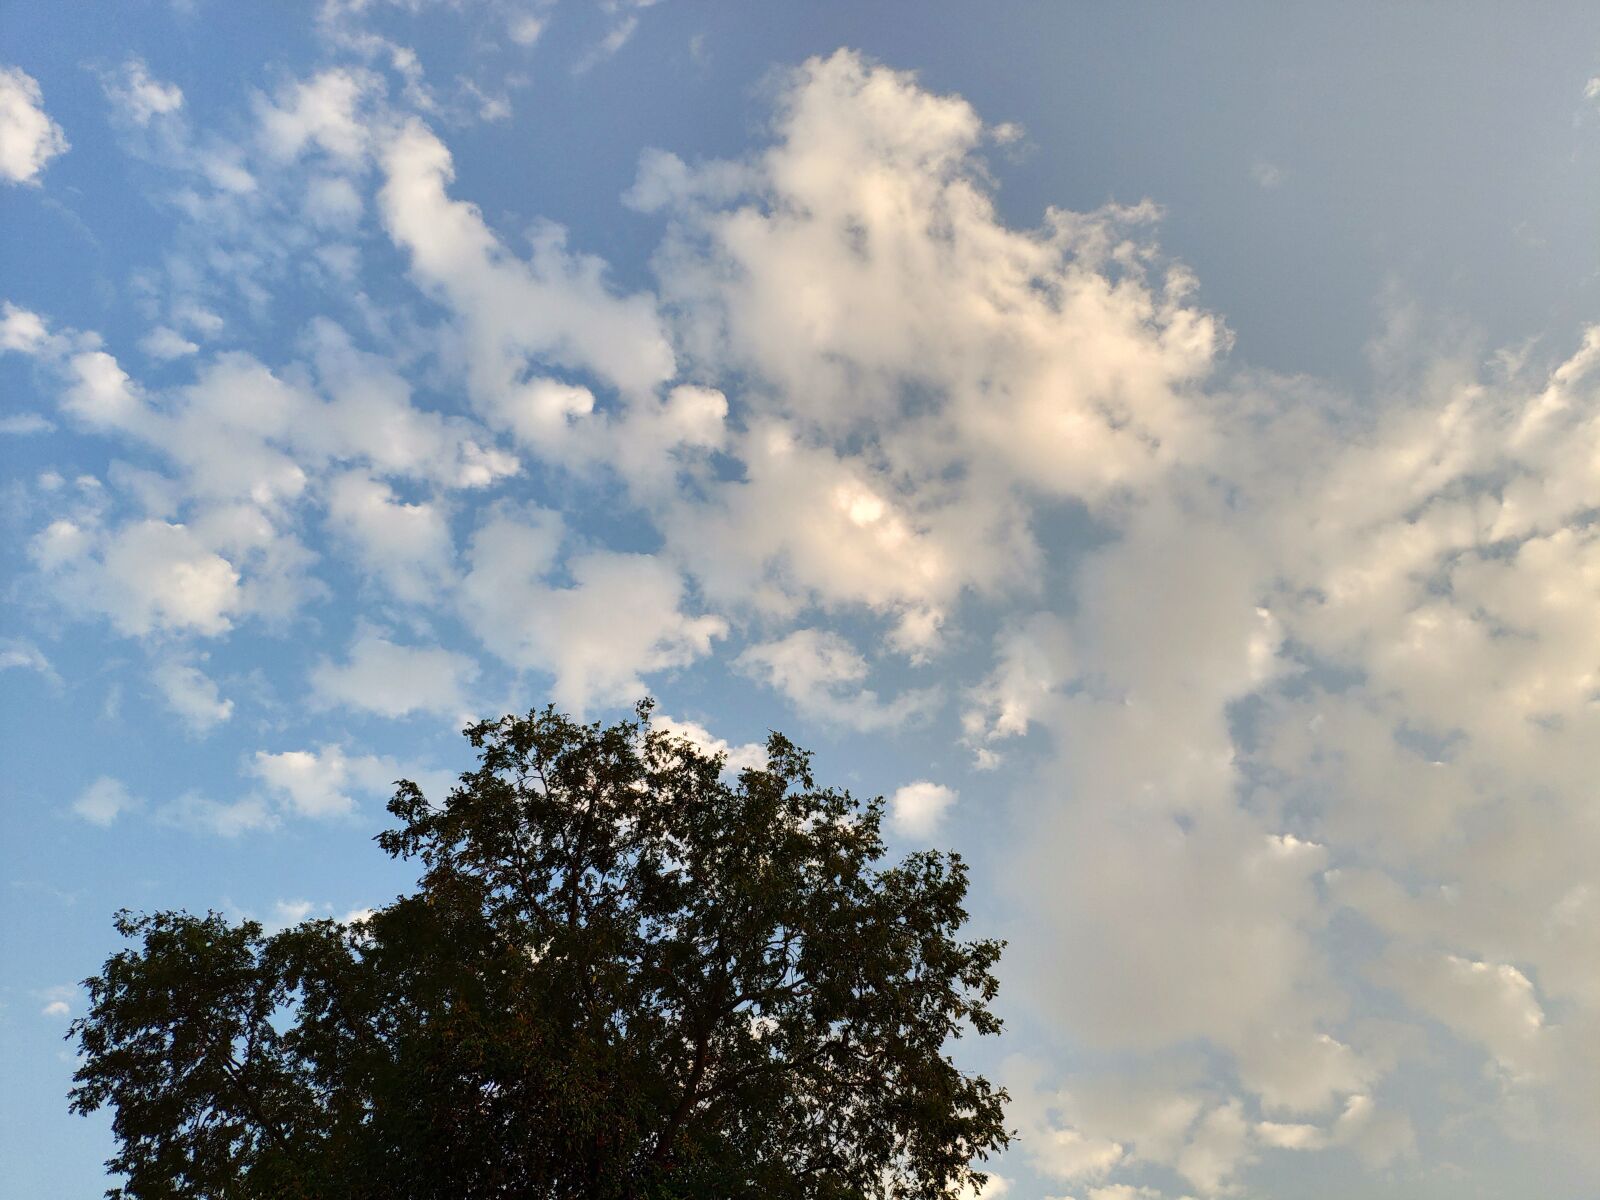 Xiaomi MIX 2S sample photo. Sky, cloud, tree photography